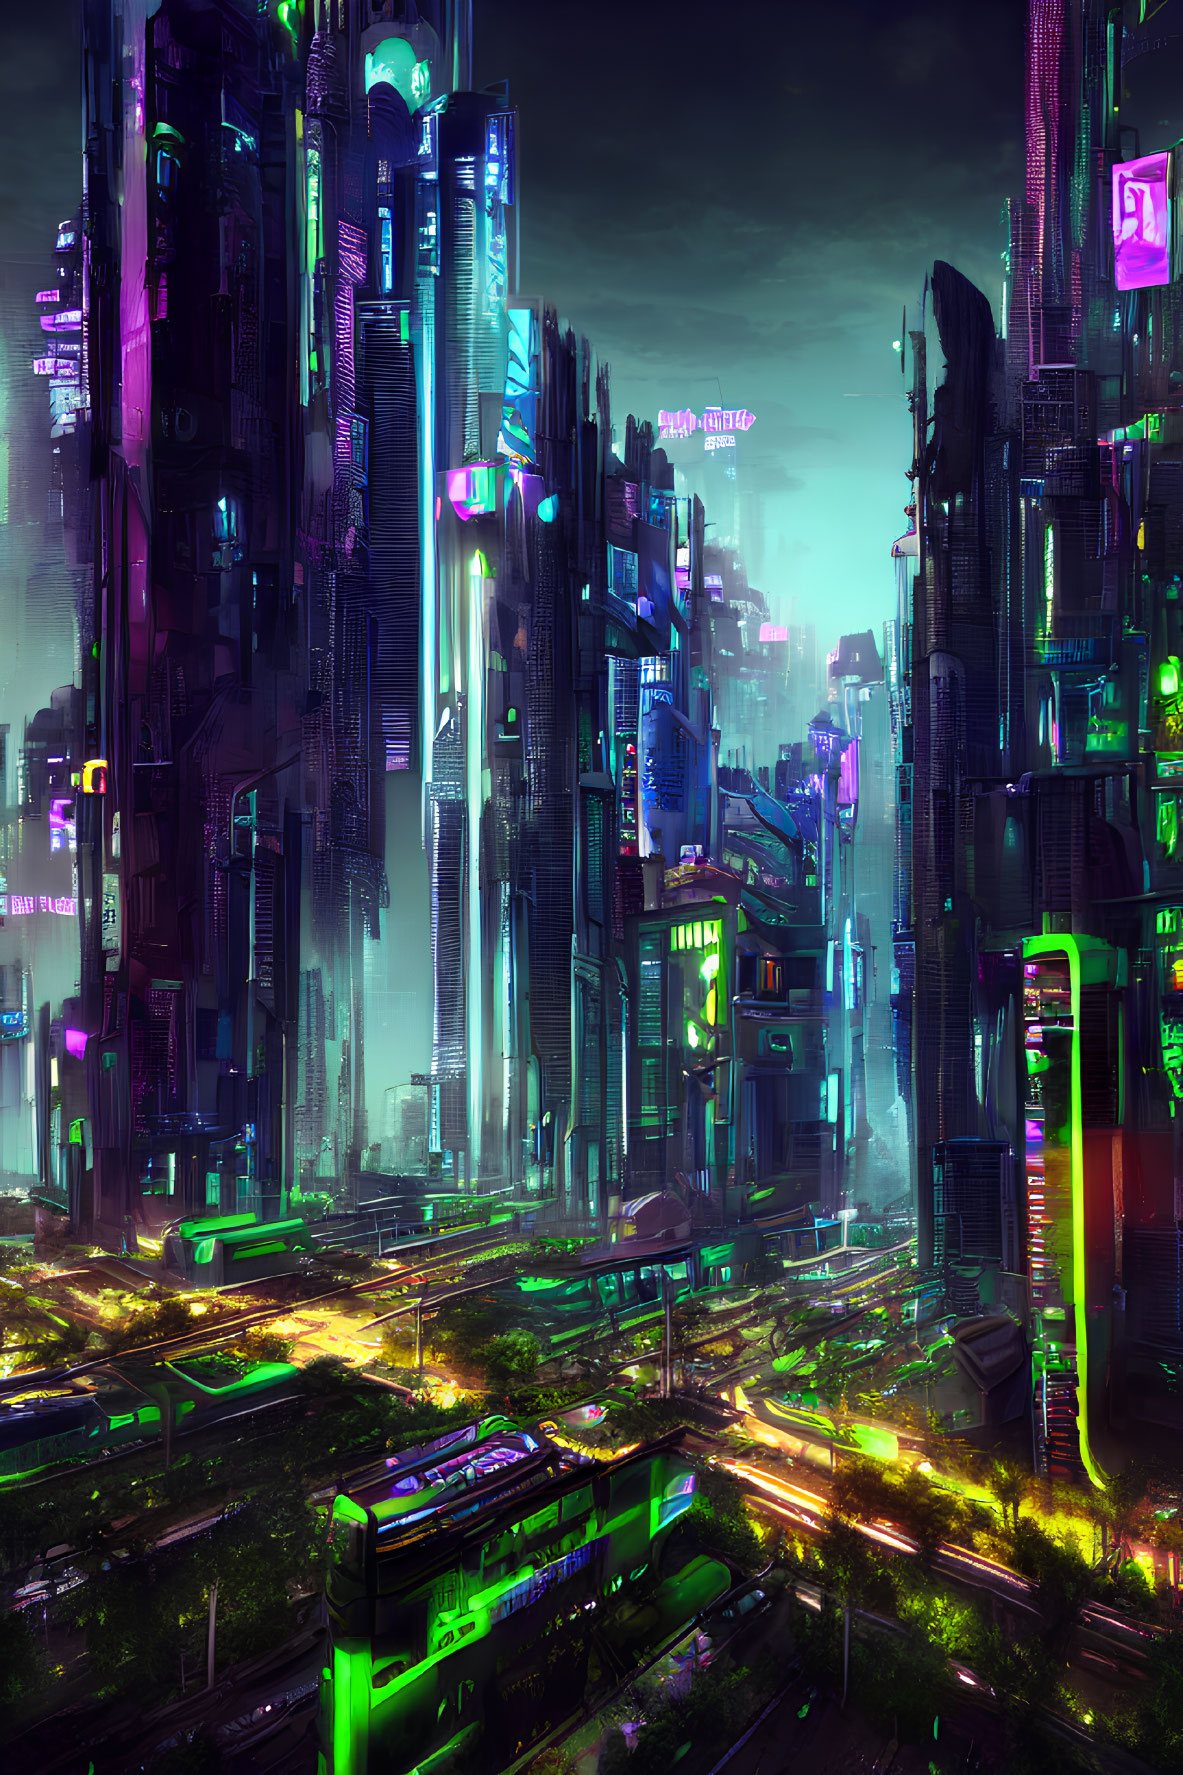 Neon-lit cyberpunk cityscape: towering skyscrapers, glowing billboards, bustling traffic